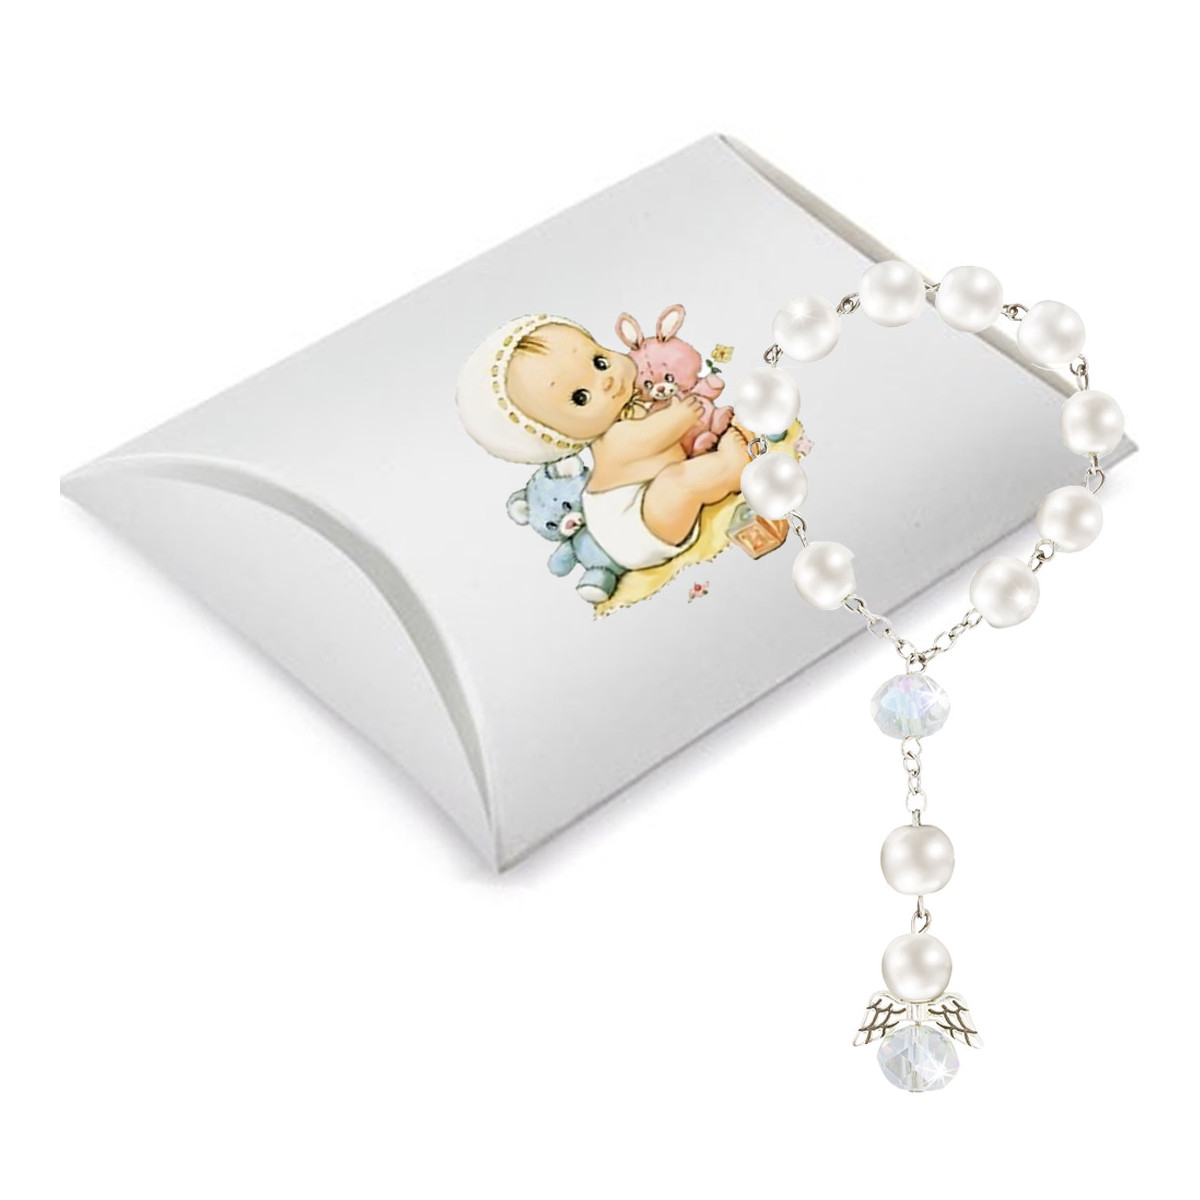 Rosário de pérolas brancas para batizado apresentado em caixa decorada com adesivo